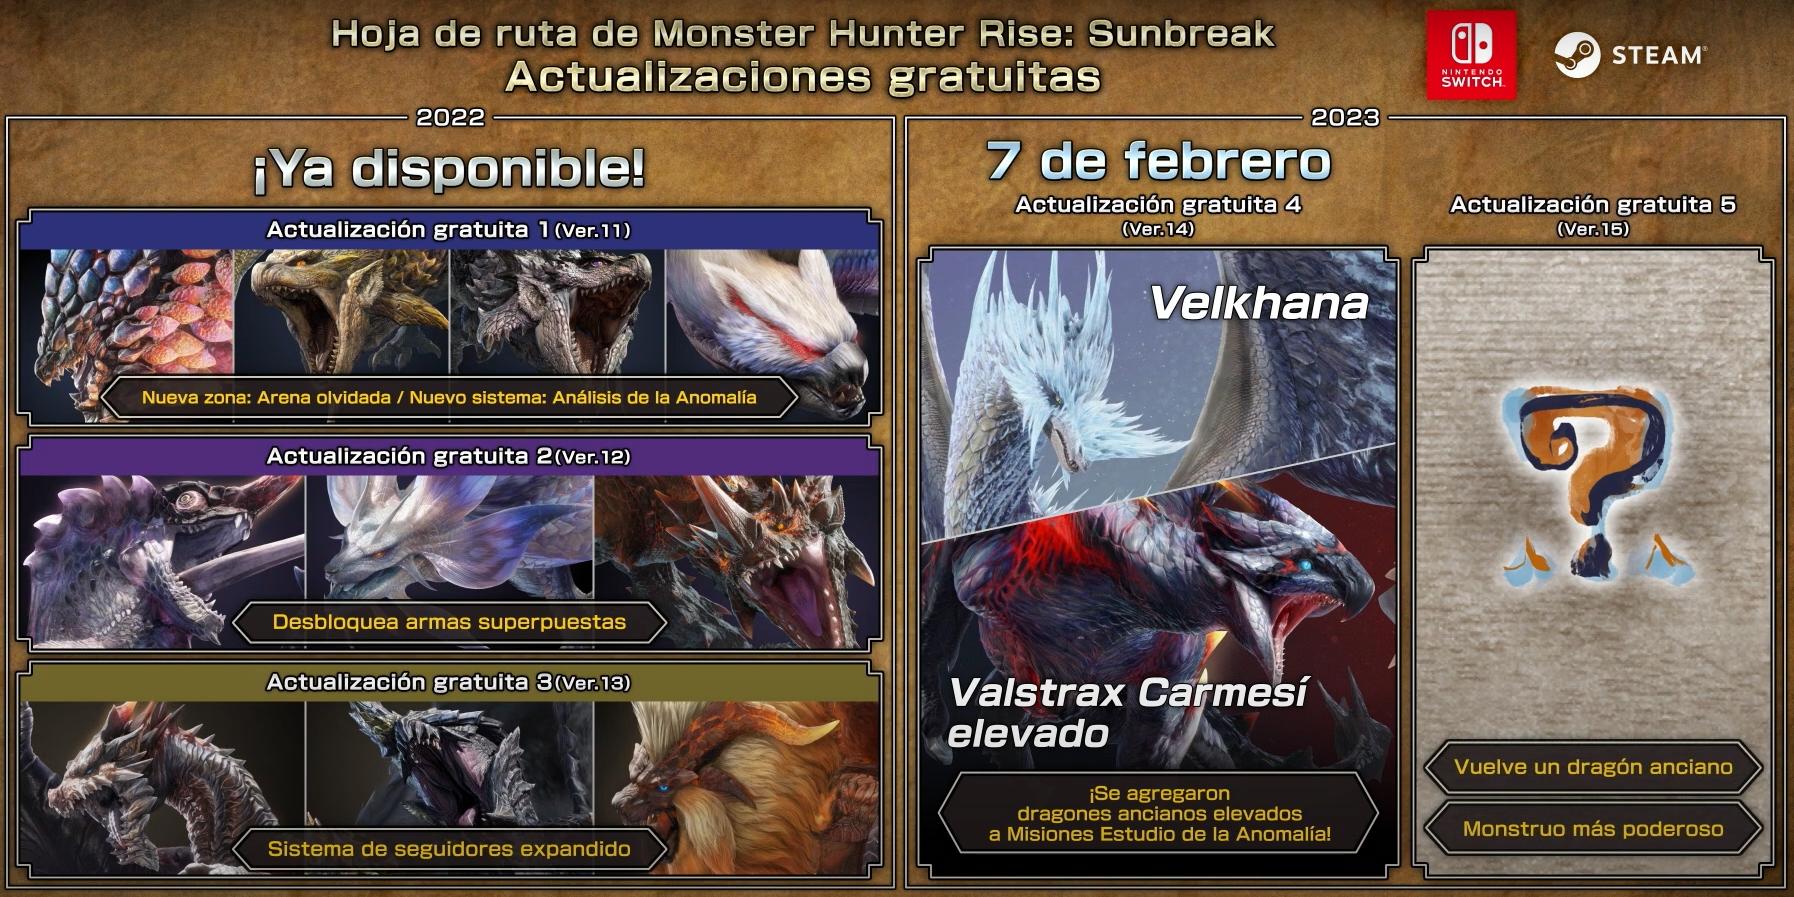 Velkhana, Valstrax Carmesí elevado, la armadura o disfraz para el Canyne y demás novedades de la actualización gratis 4 de Monster Hunter Rise: Sunbreak.